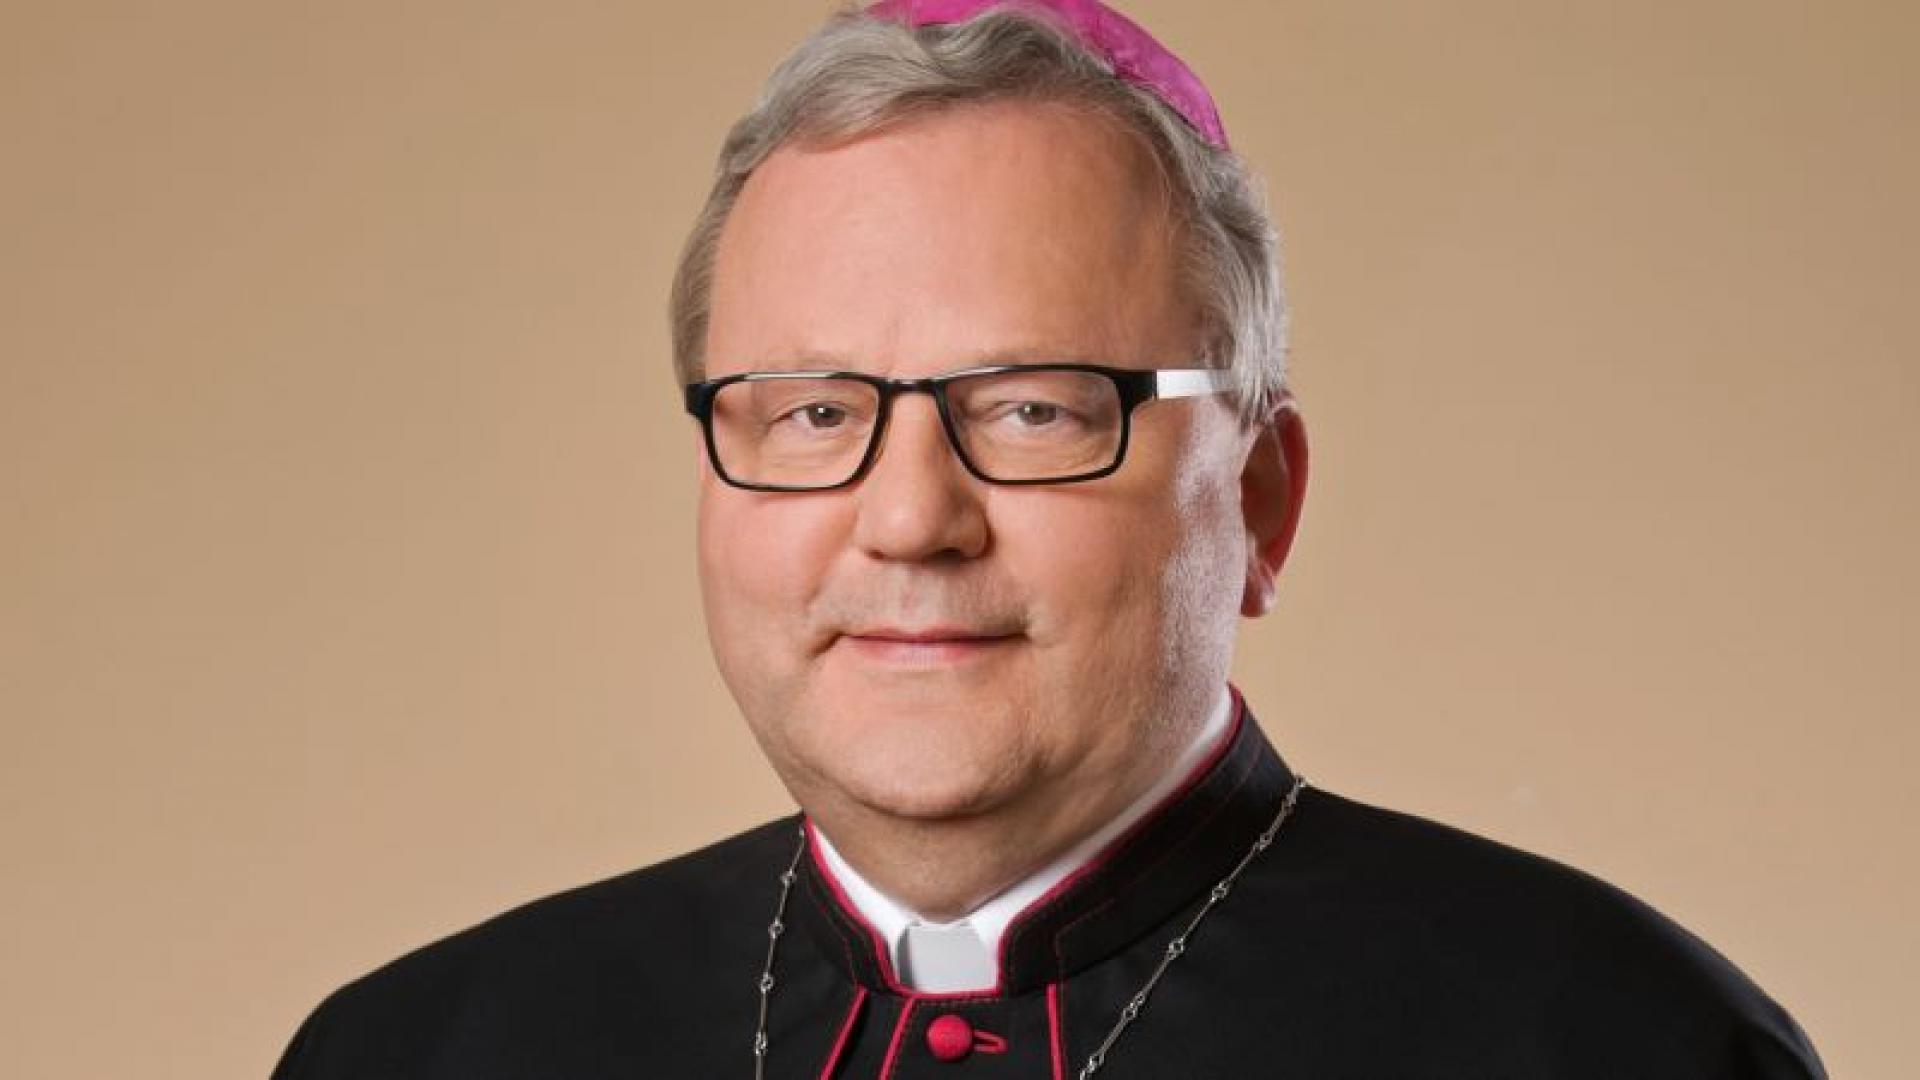 Porträtfoto von Altbischof Bode